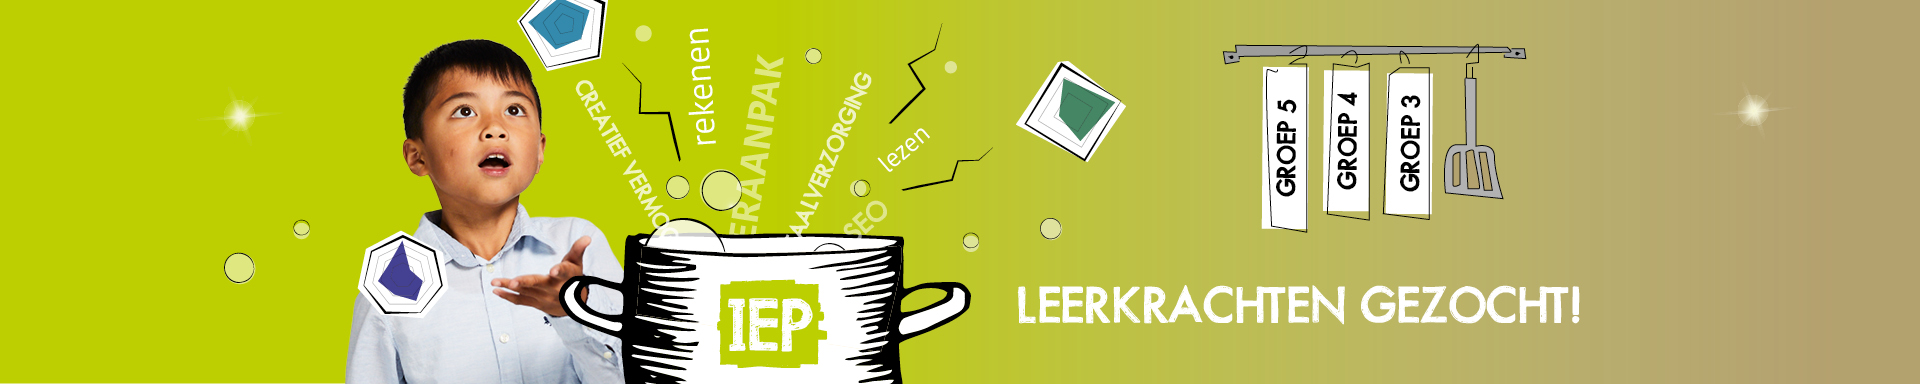 IEP Banner Website Kijkje In Keuken 2